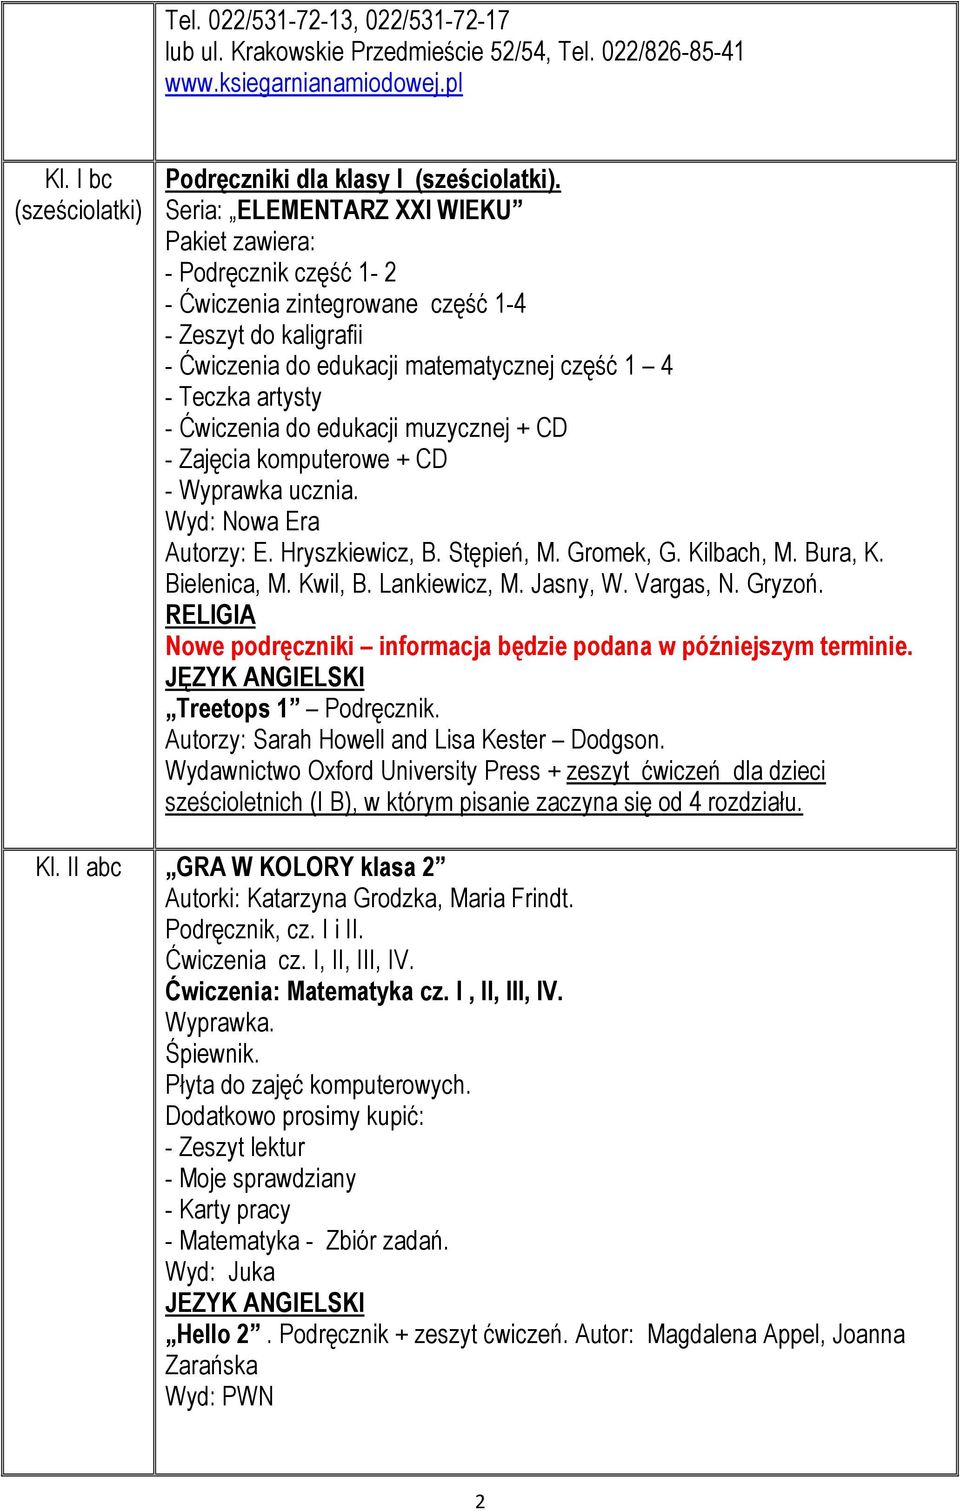 edukacji muzycznej + CD - Zajęcia komputerowe + CD - Wyprawka ucznia. Autorzy: E. Hryszkiewicz, B. Stępień, M. Gromek, G. Kilbach, M. Bura, K. Bielenica, M. Kwil, B. Lankiewicz, M. Jasny, W.